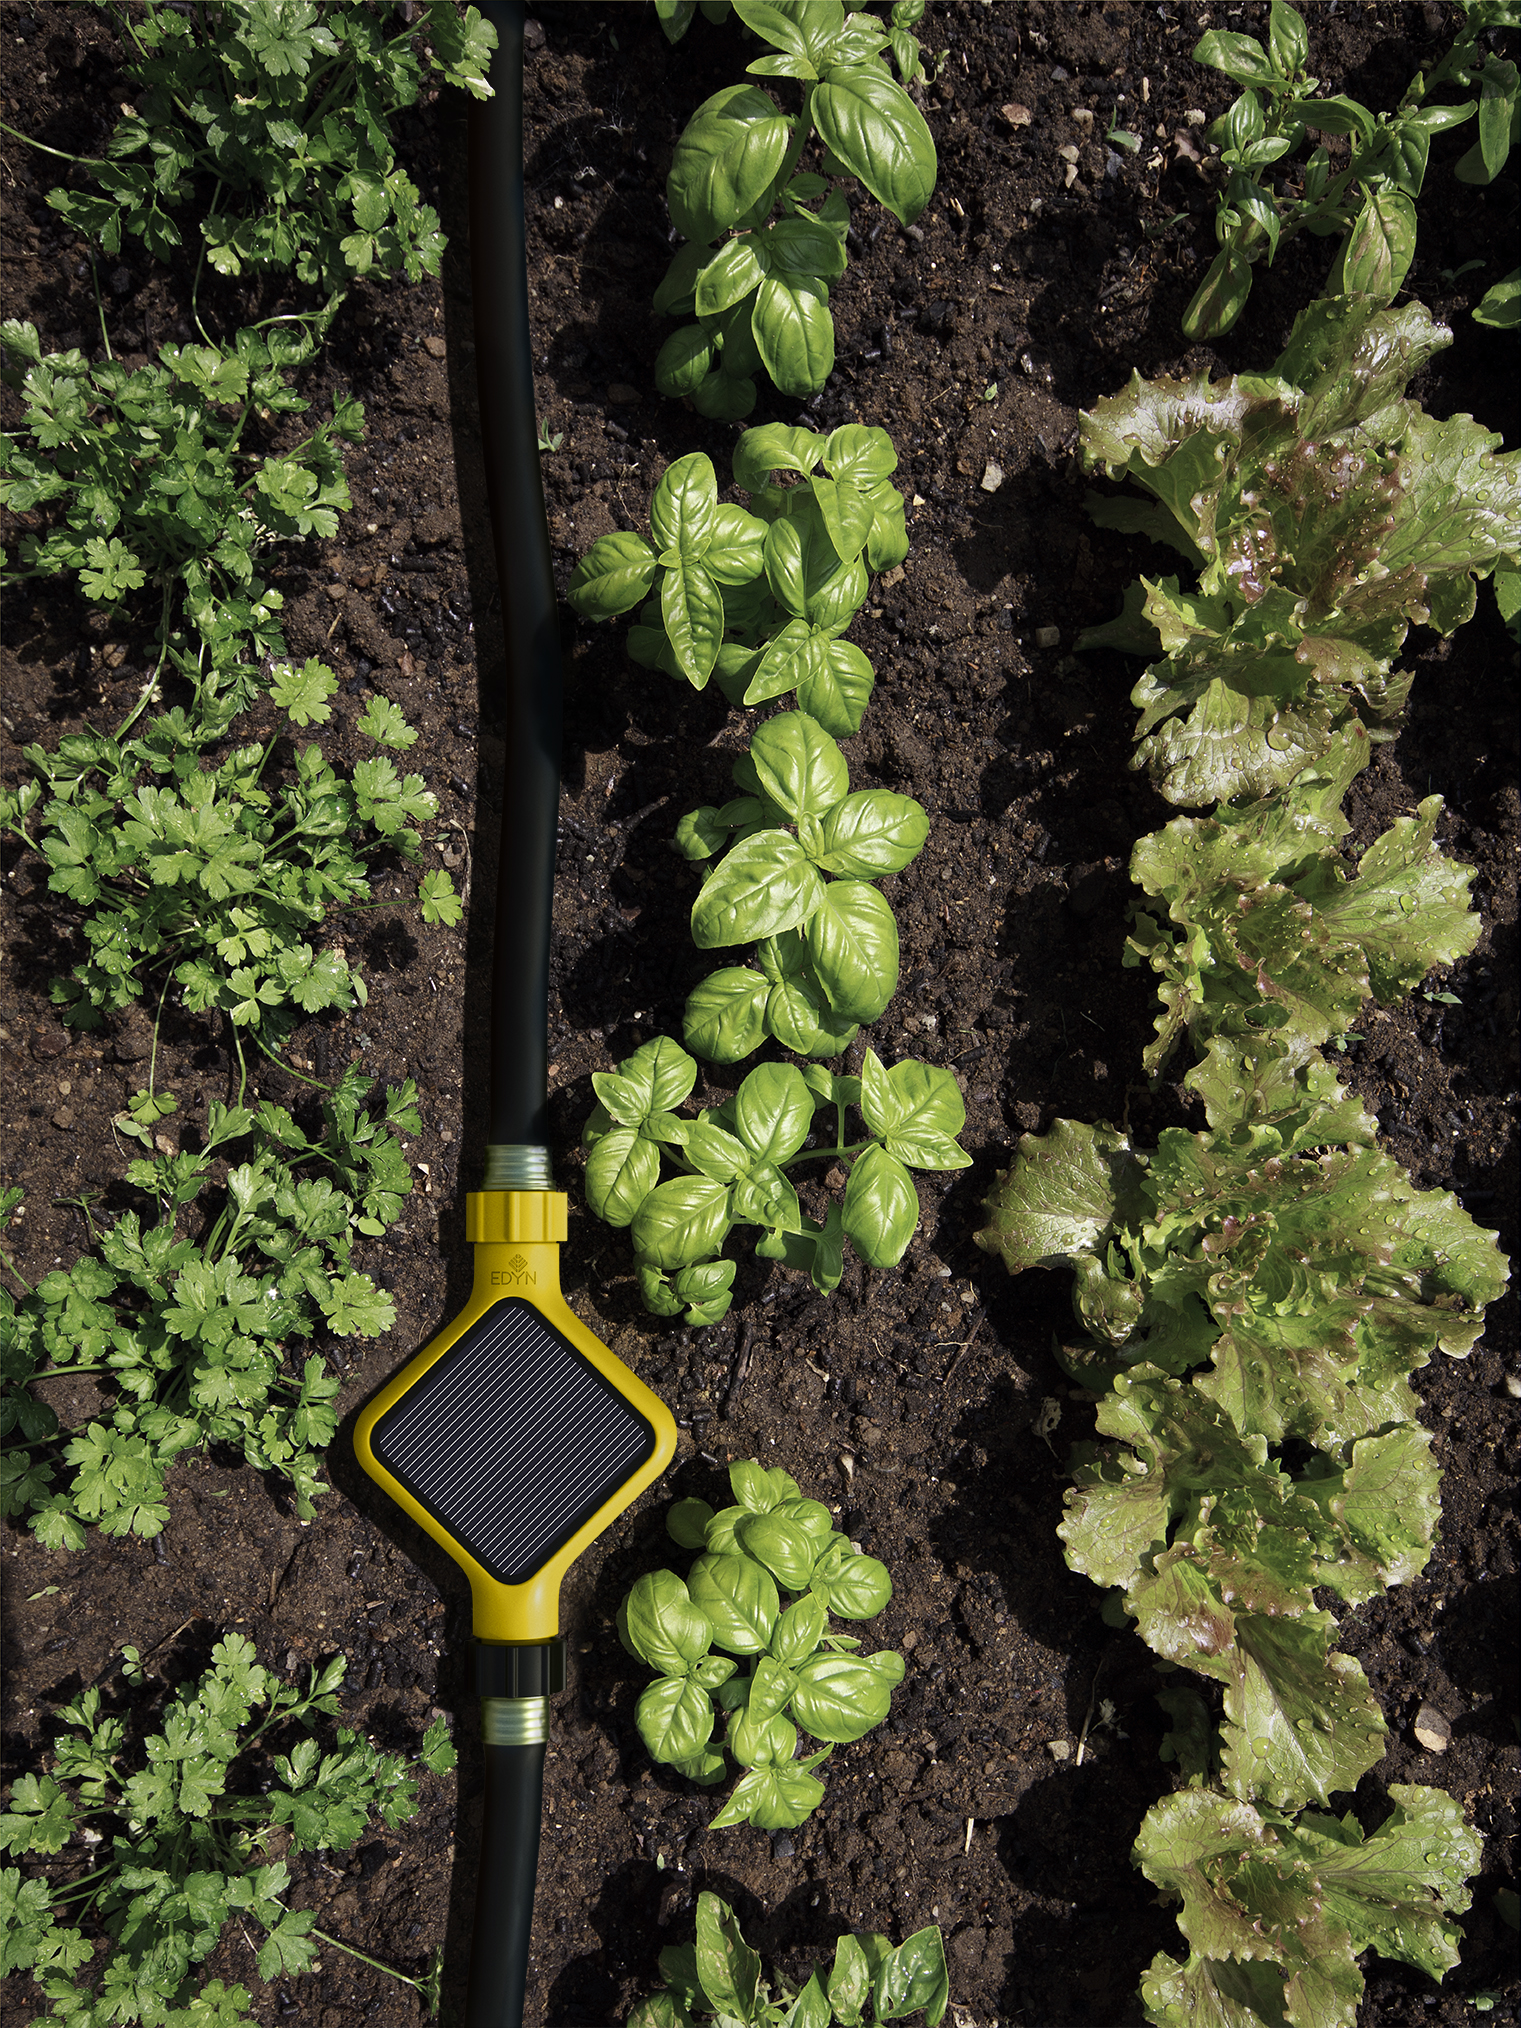 Edyn Smart Garden System Launches Kickstarter Campaign